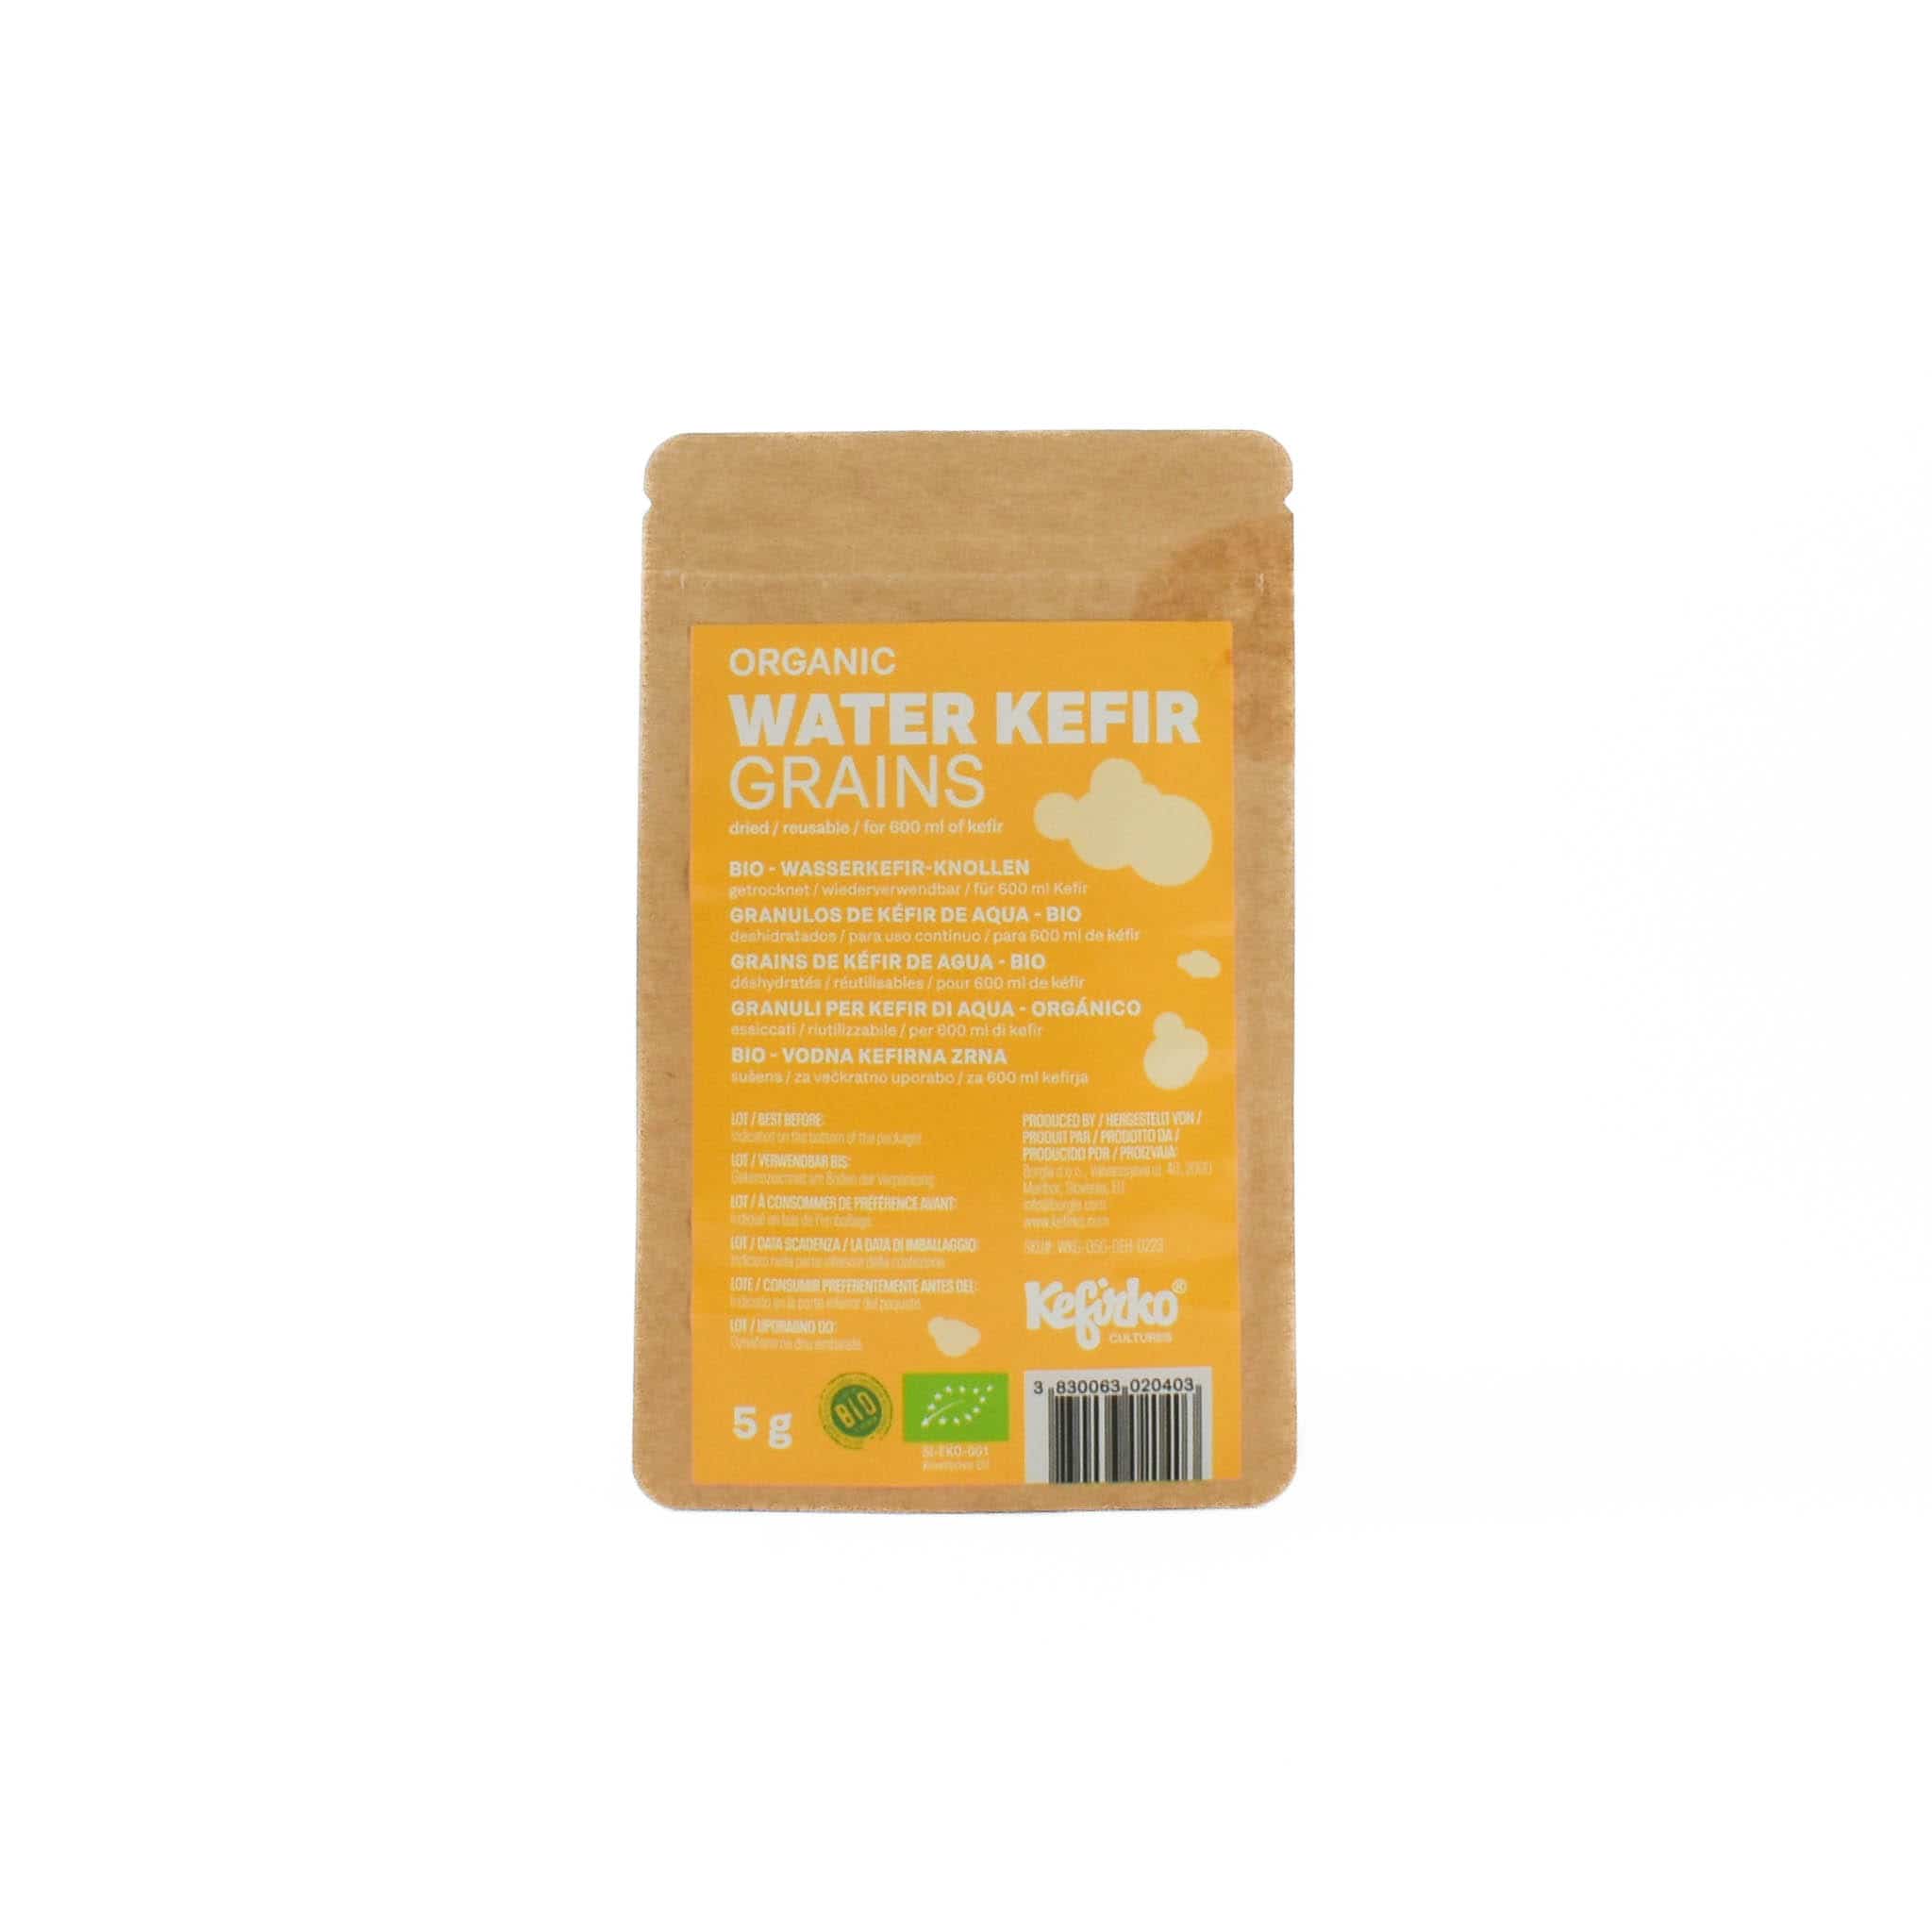 Kerfiko Water Kefir Grains, 5g